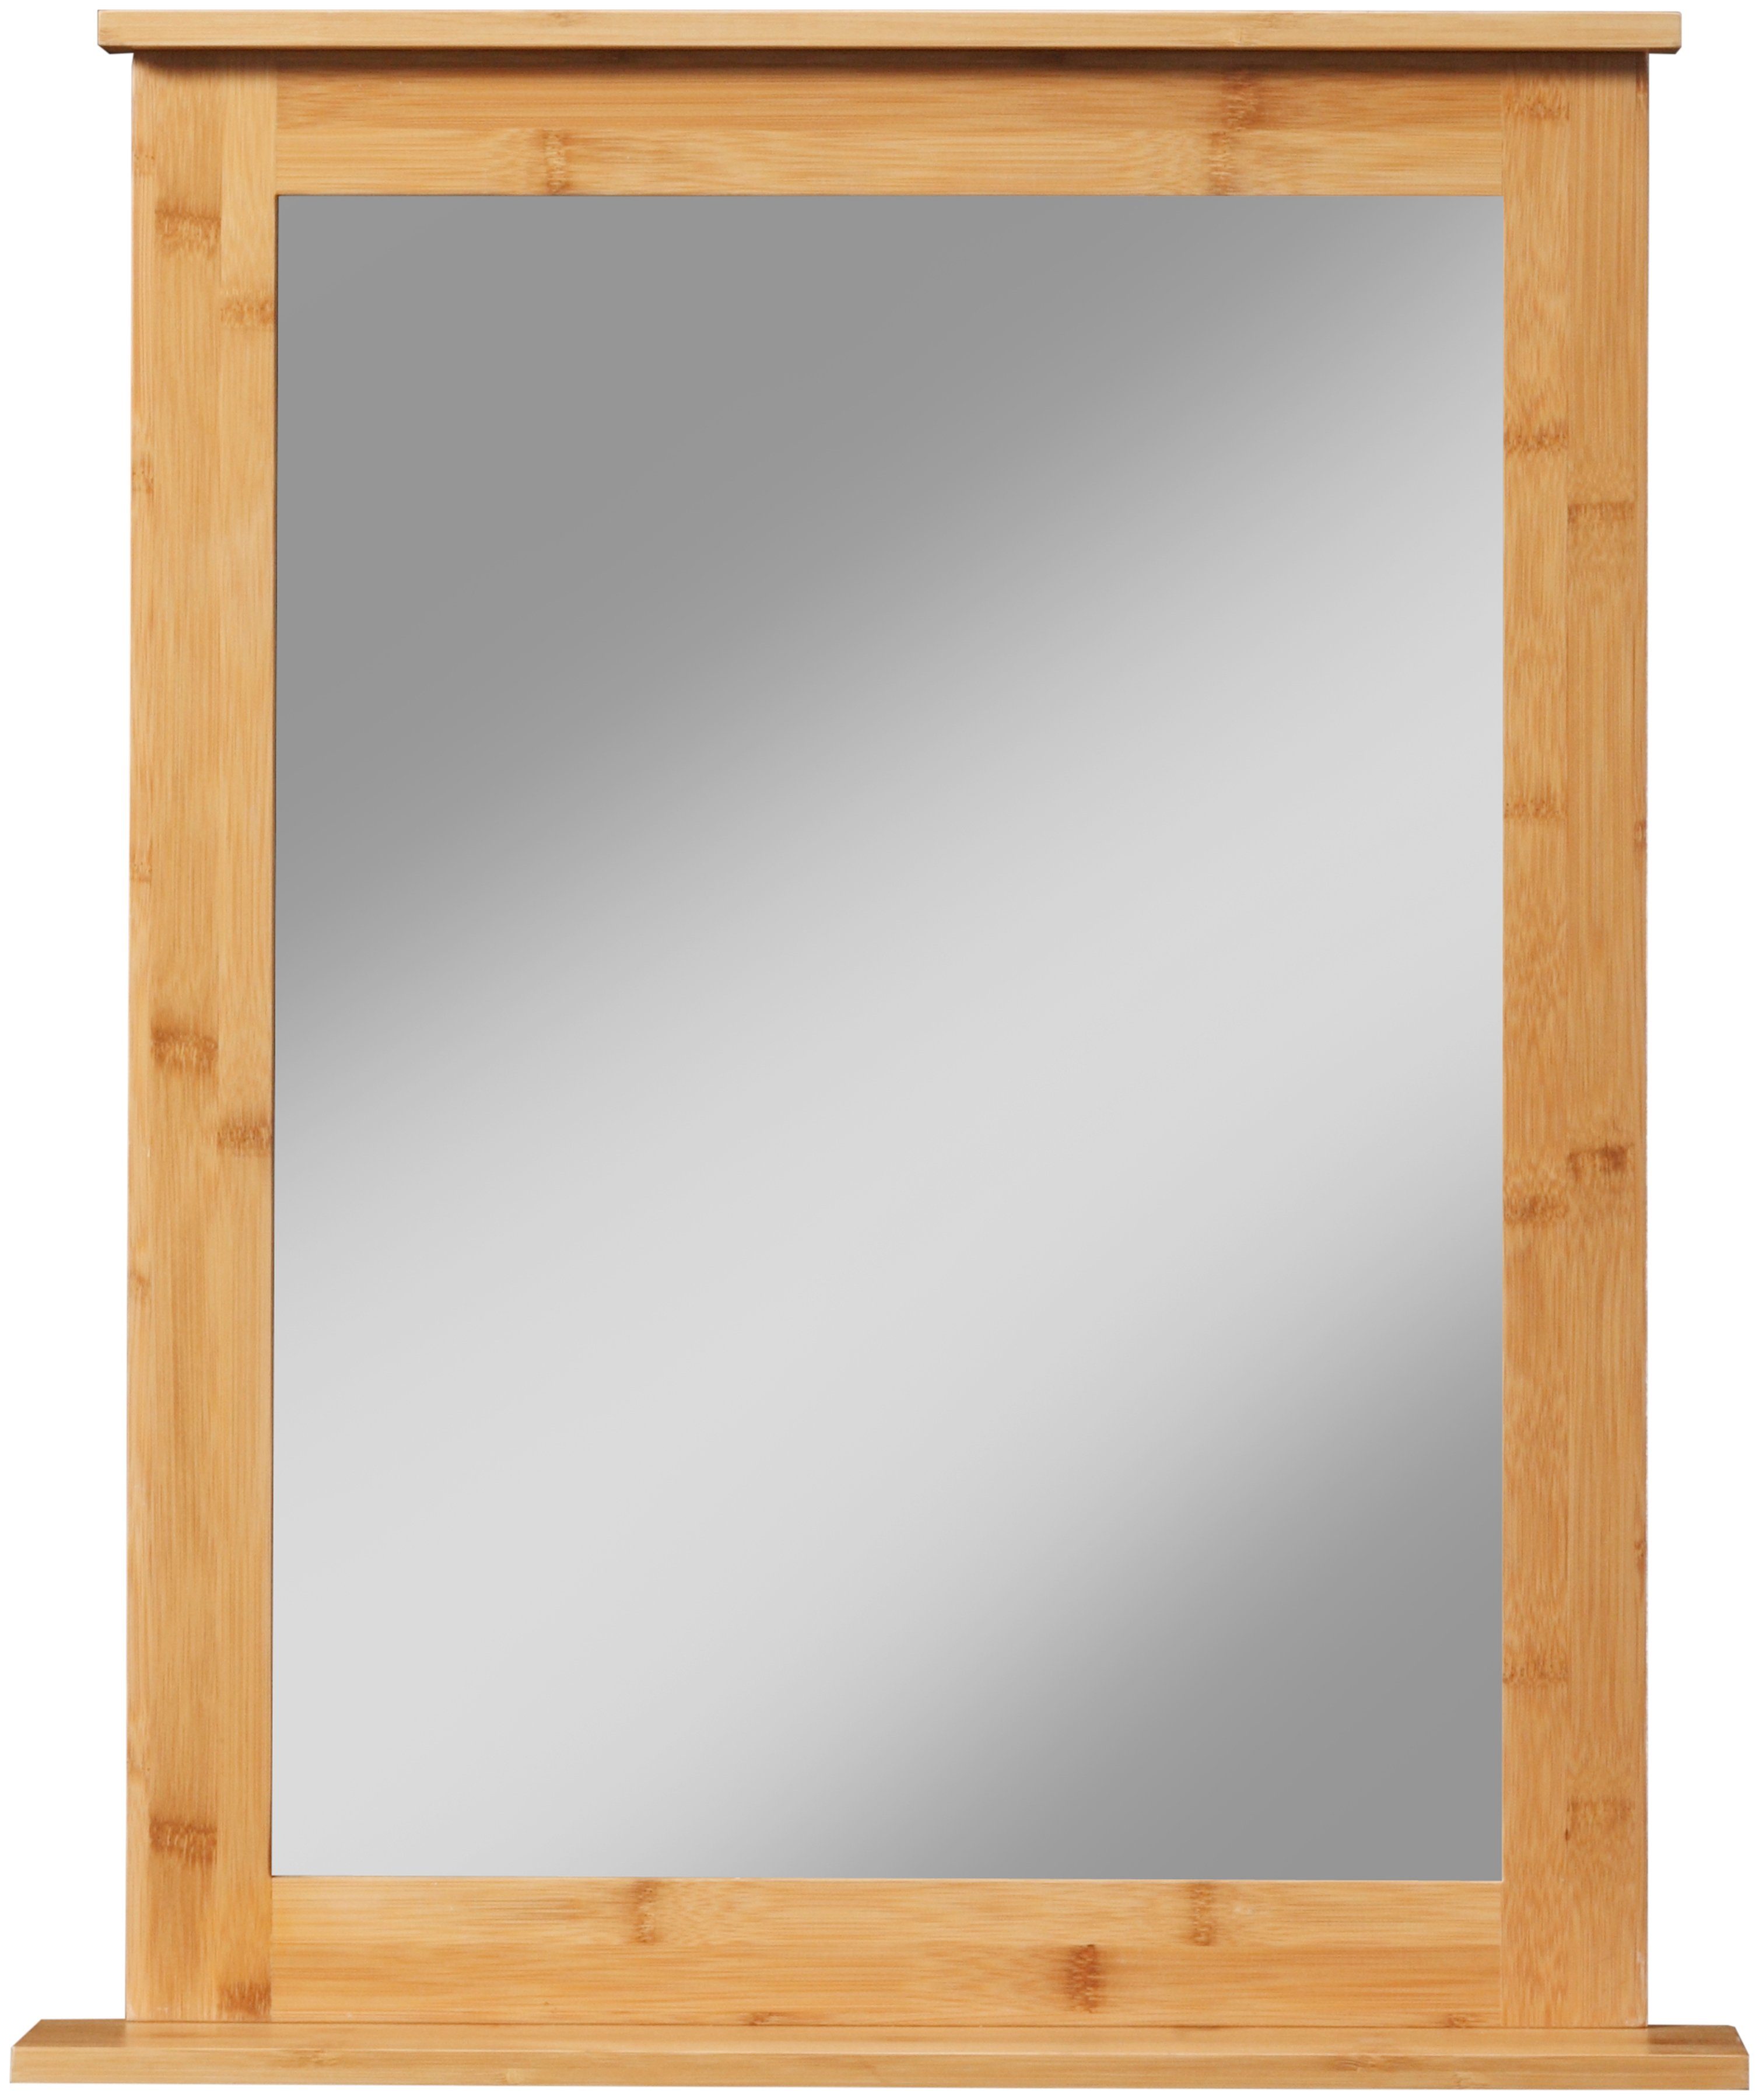 welltime Badspiegel Bambus New, Badezimmerspiegel mit Bambus-Rahmen, eckig  58x70cm